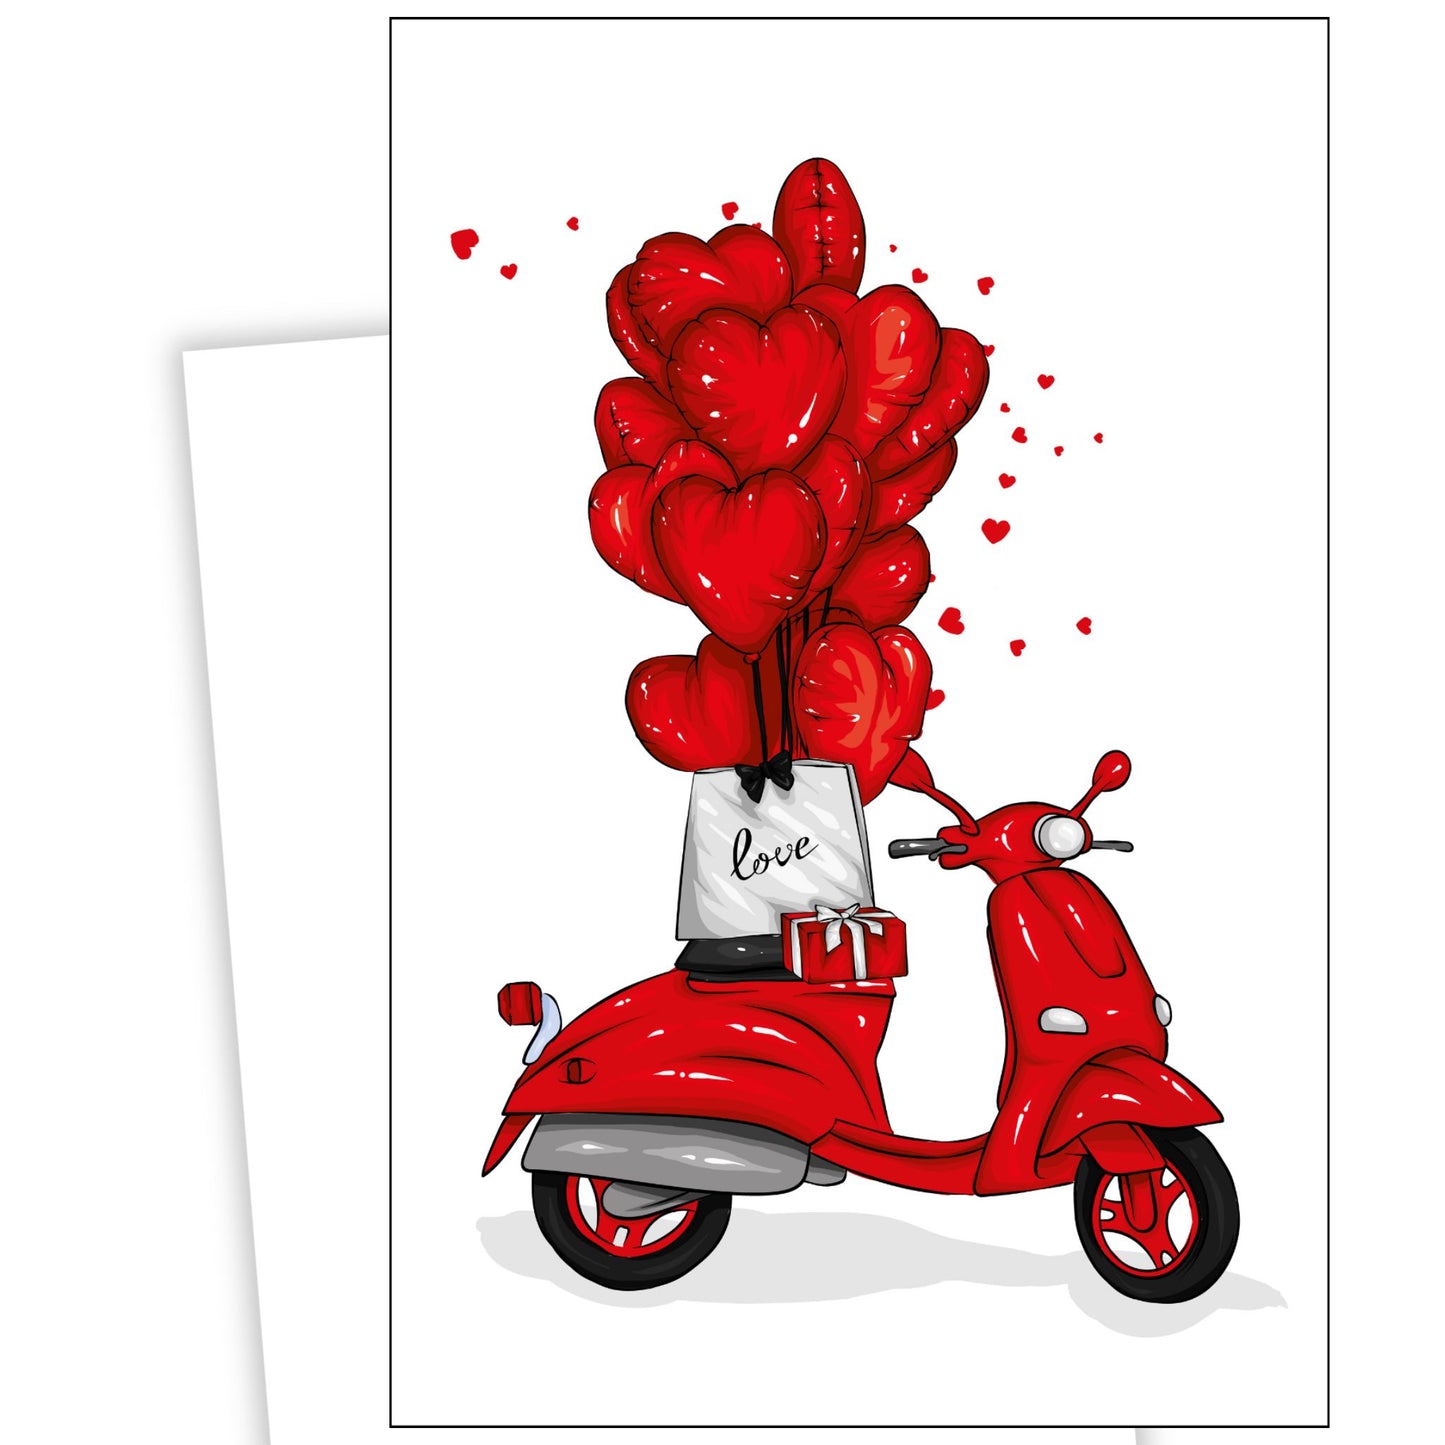 Valentinekort med en rød Vespa og røde ballonger.